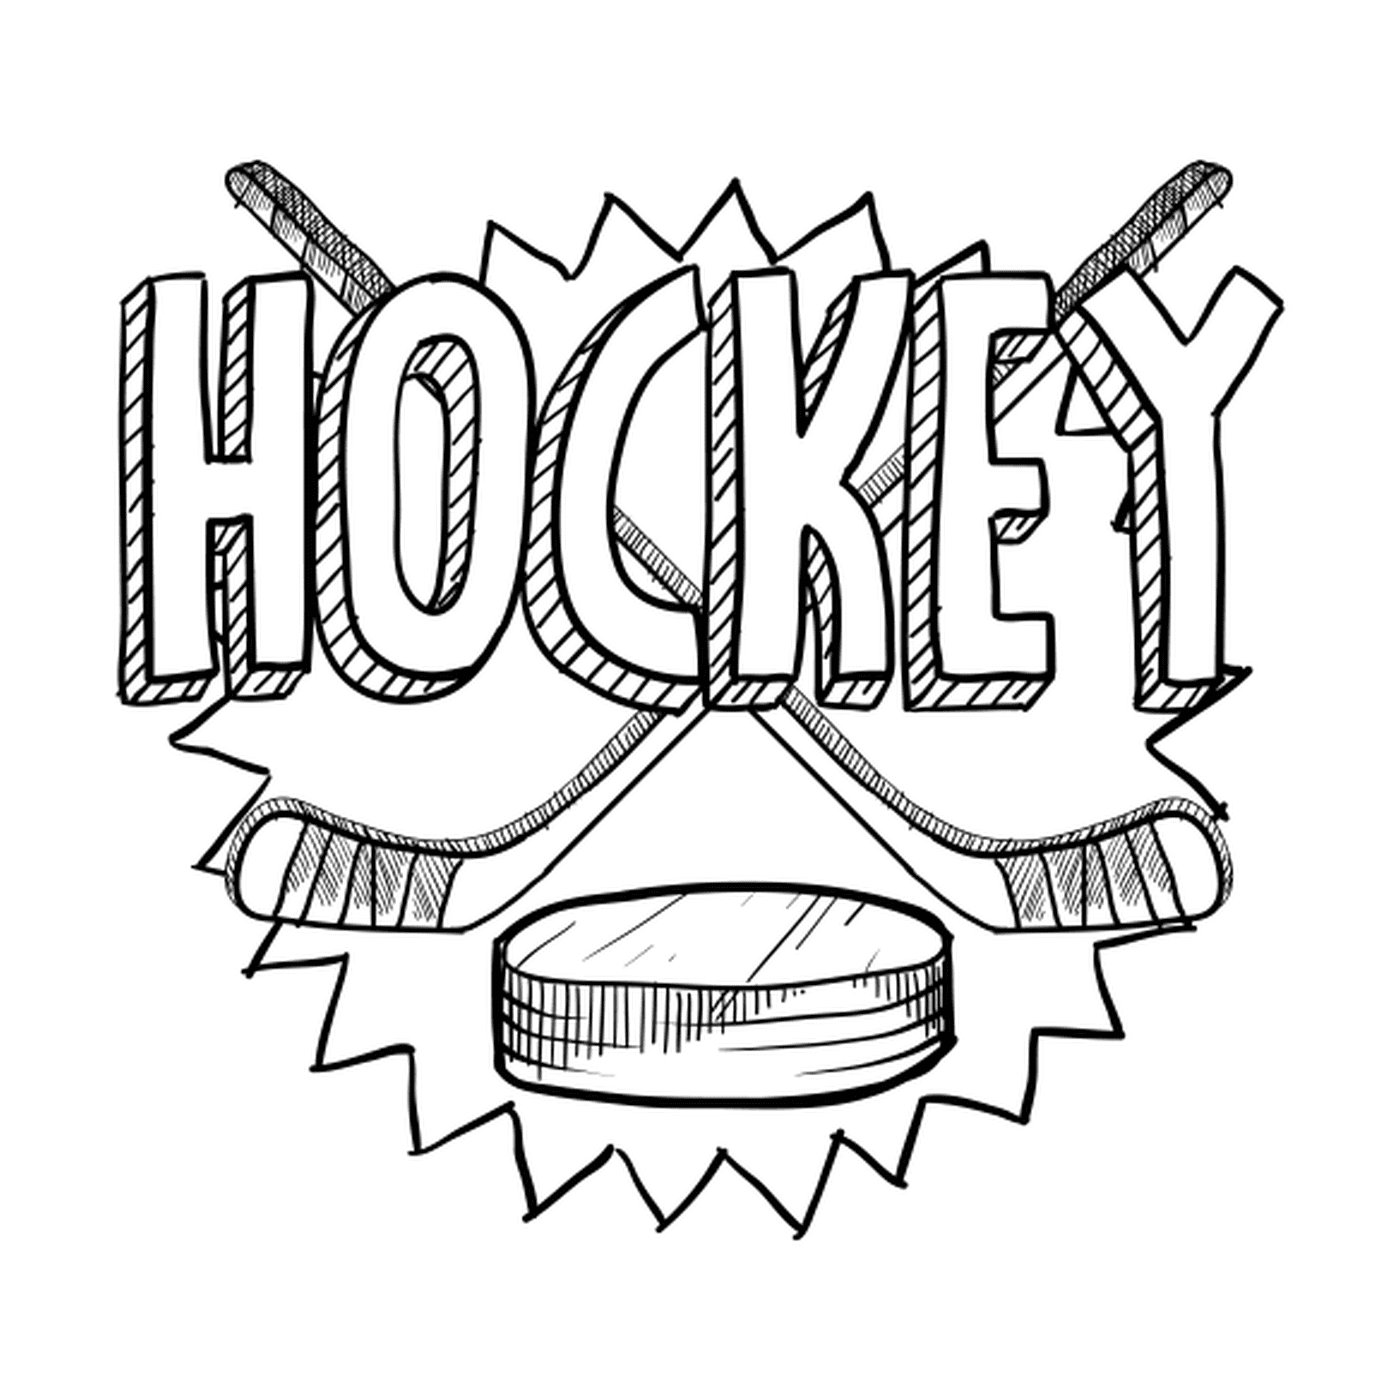  Hockeyausrüstung 